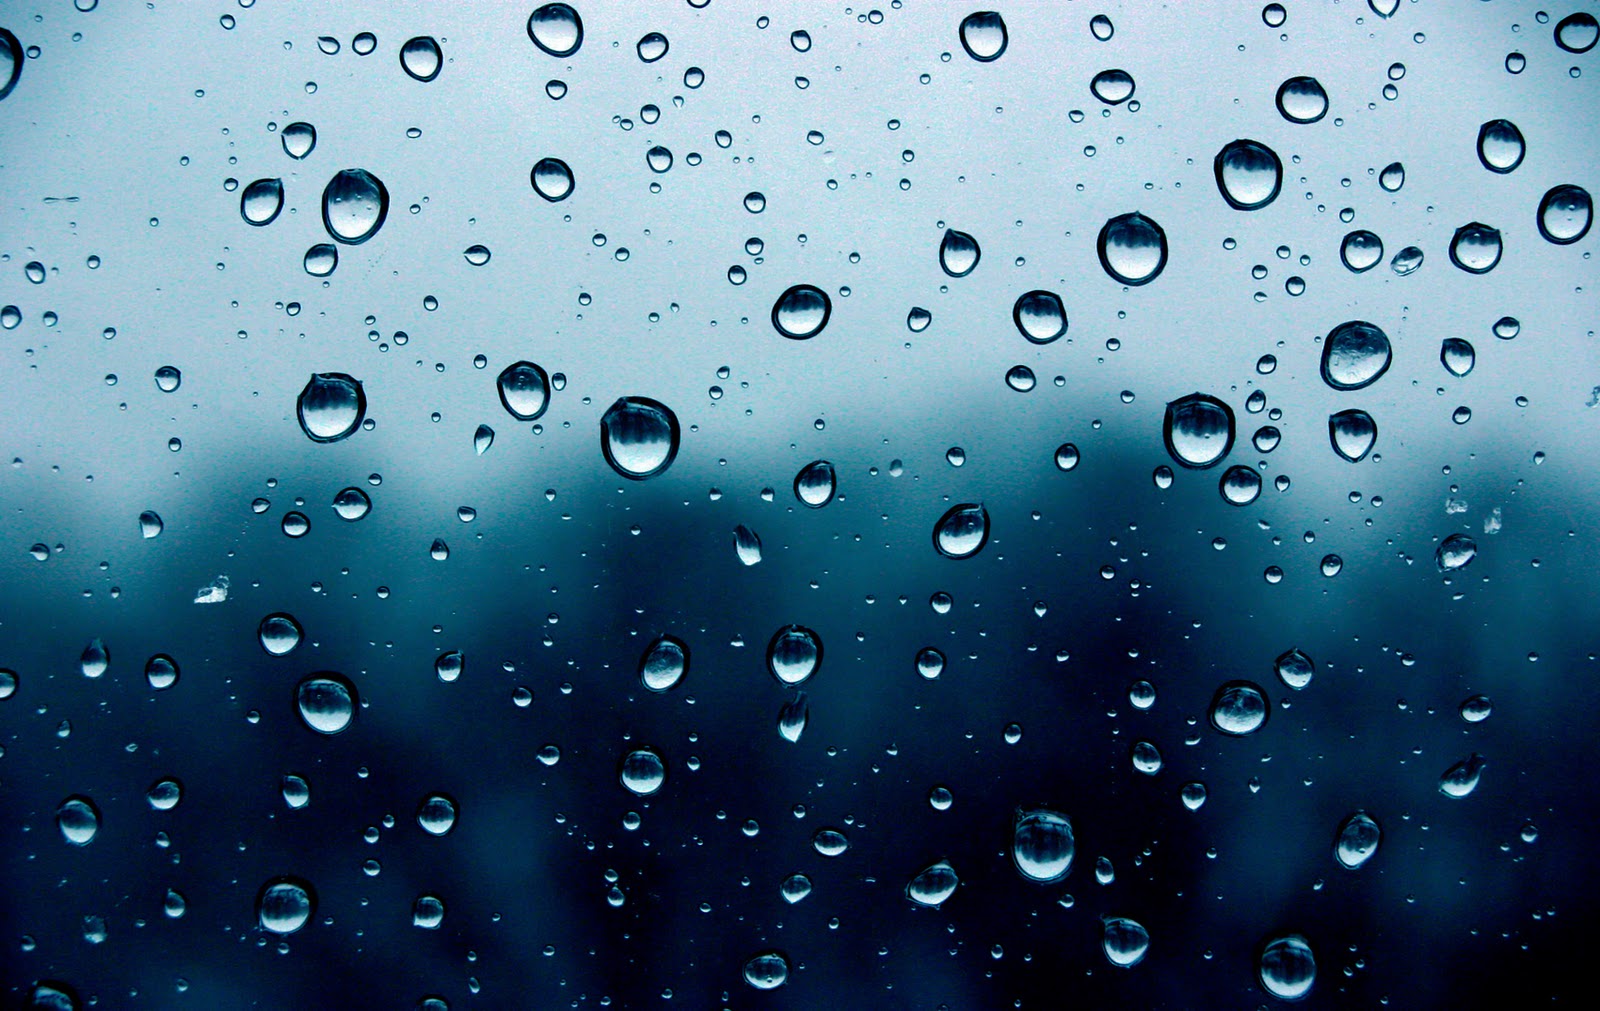 Rain Drops On Window Wallpaper 19001200 Ina Sitepu